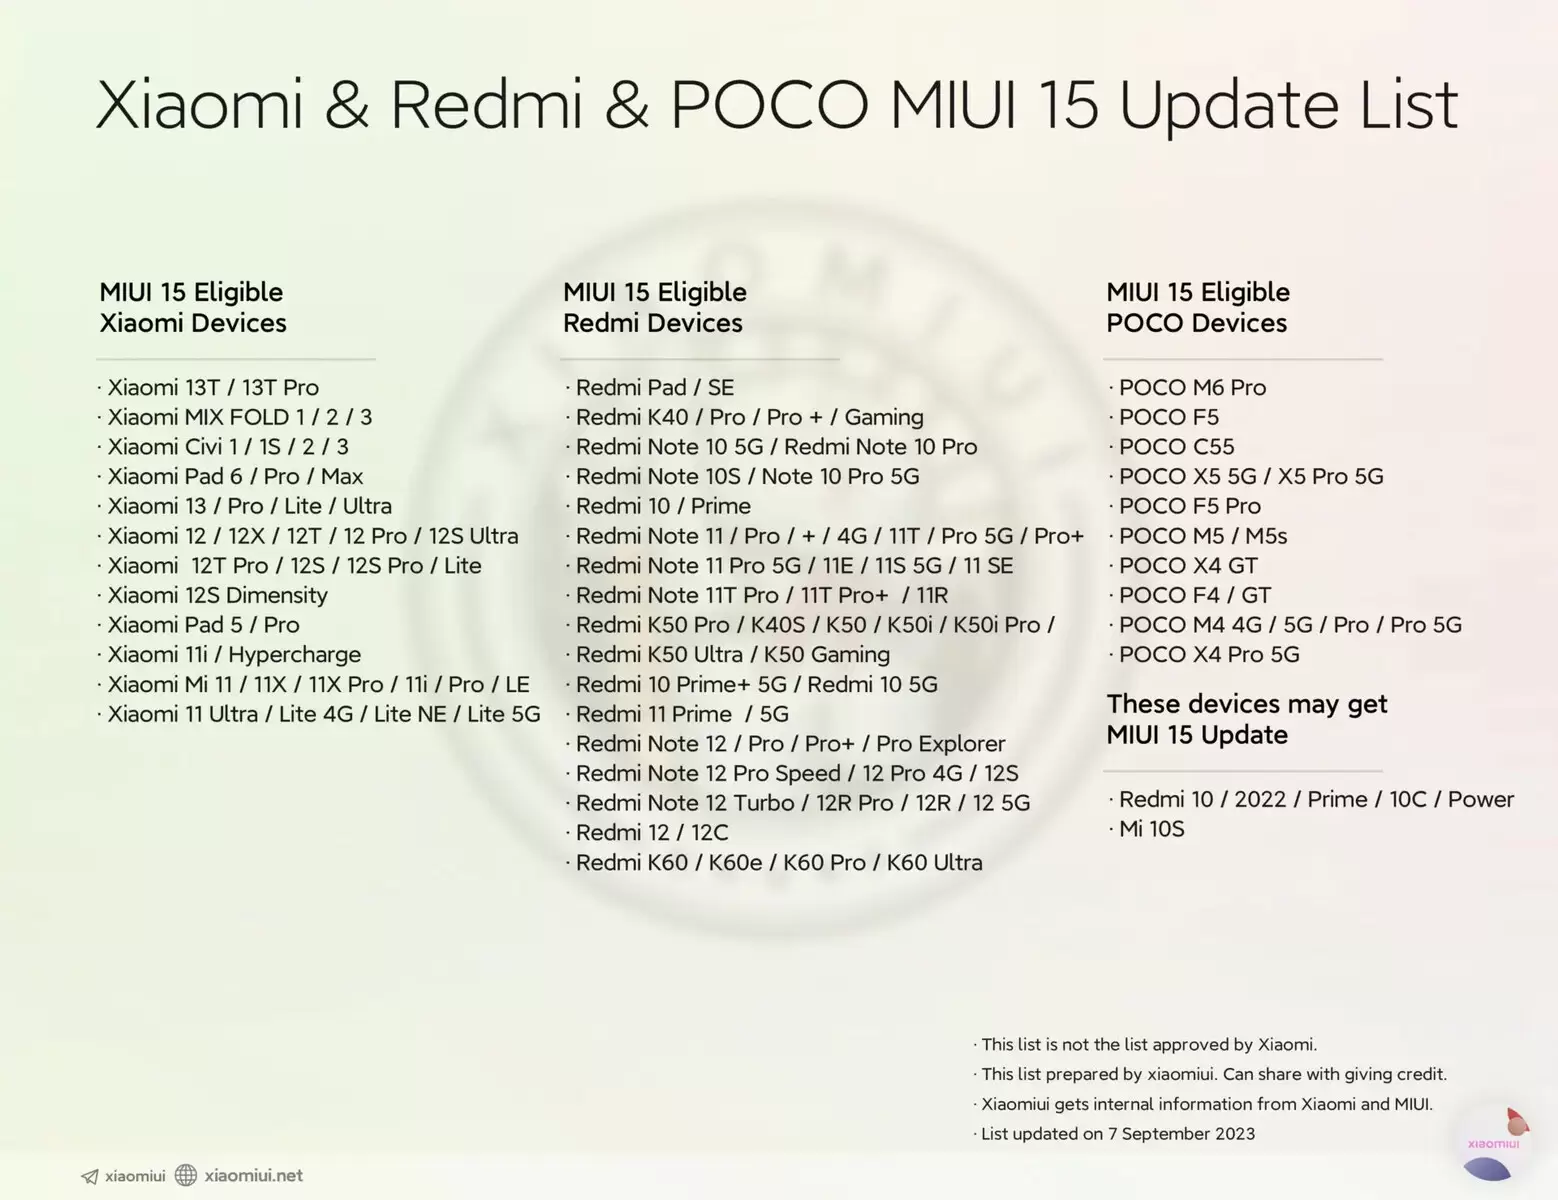 csm MIUI 15 Update Liste d75c17d64d